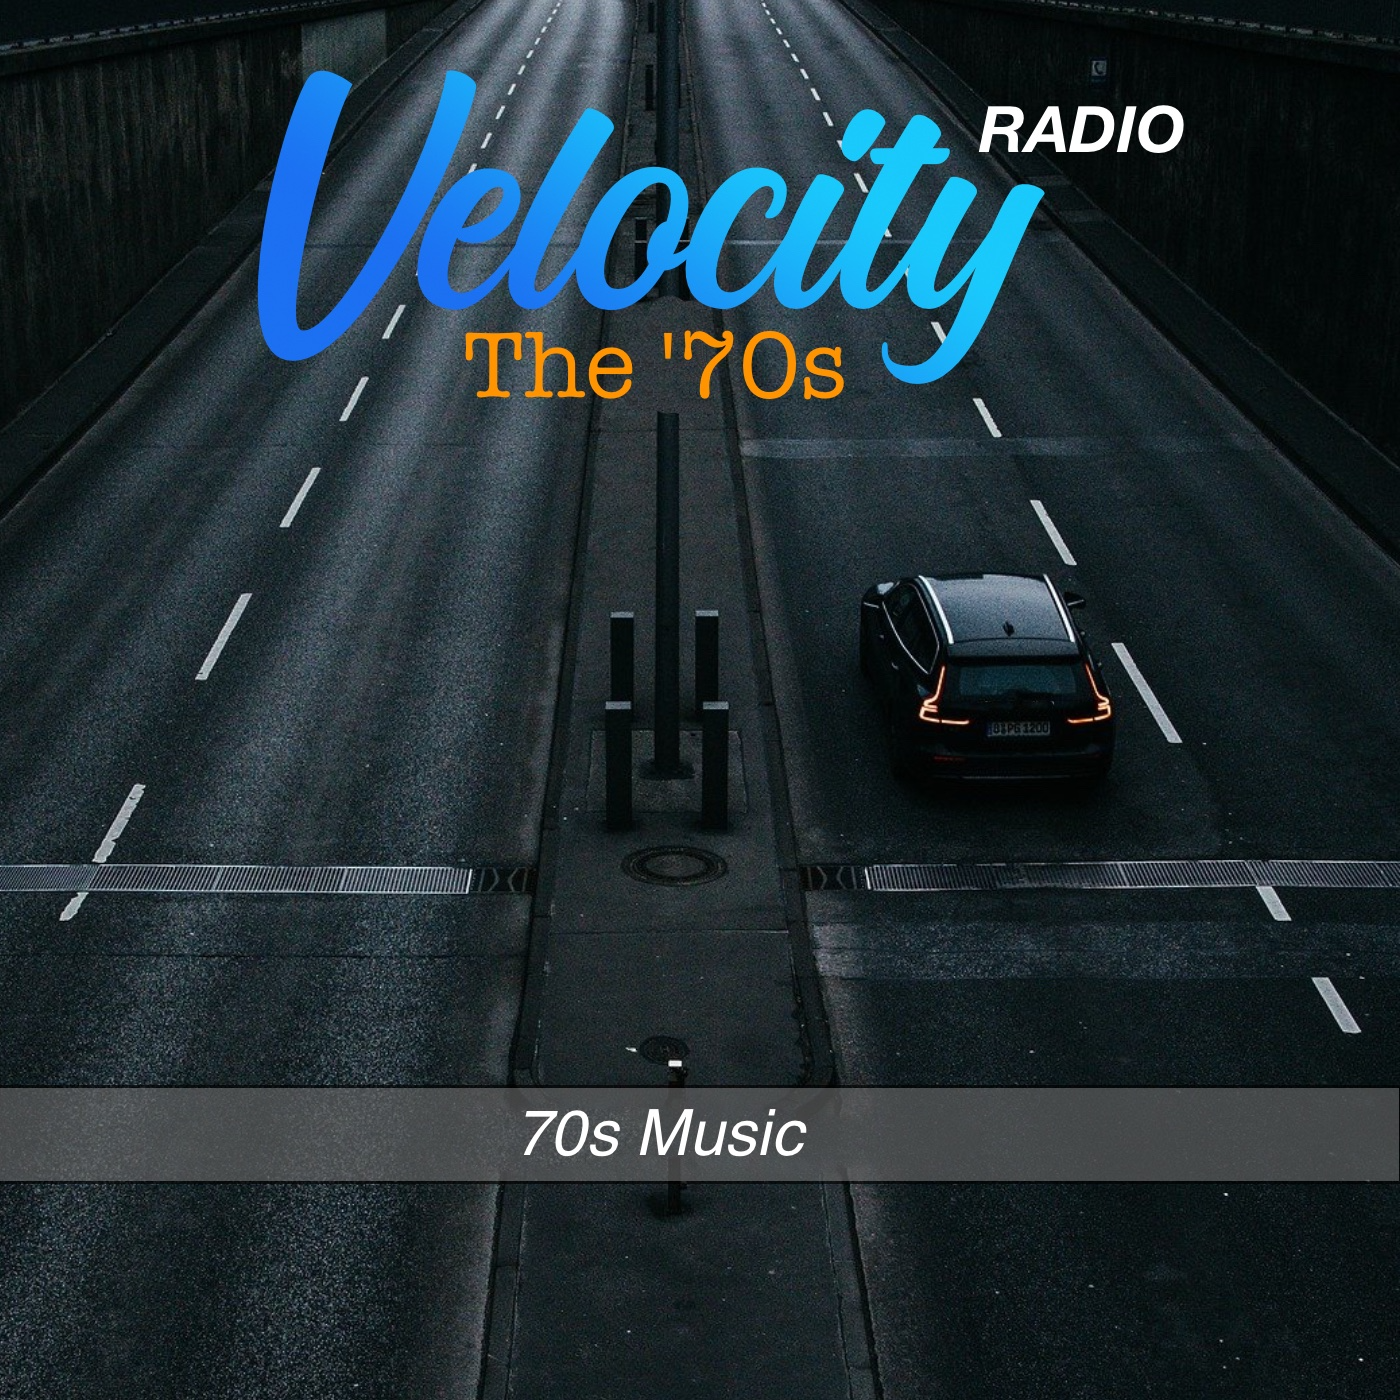 Velocity Radio - The '70s